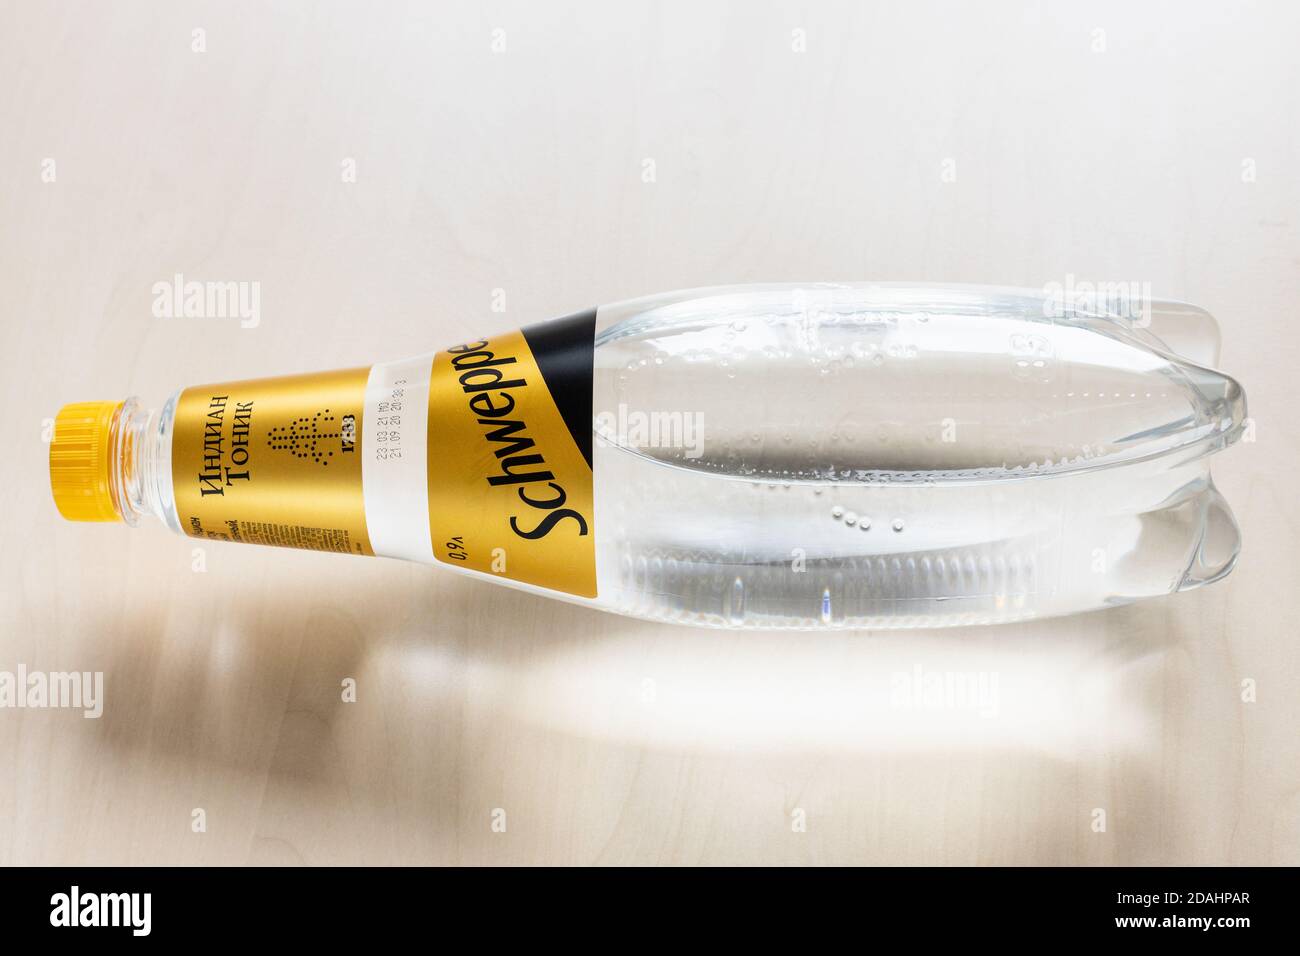 MOSCA, RUSSIA - 4 NOVEMBRE 2020: Steso russo edizione bottiglia di acqua tonica indiana Schweppes su tavola marrone chiaro. Schweppes è il mondo Foto Stock